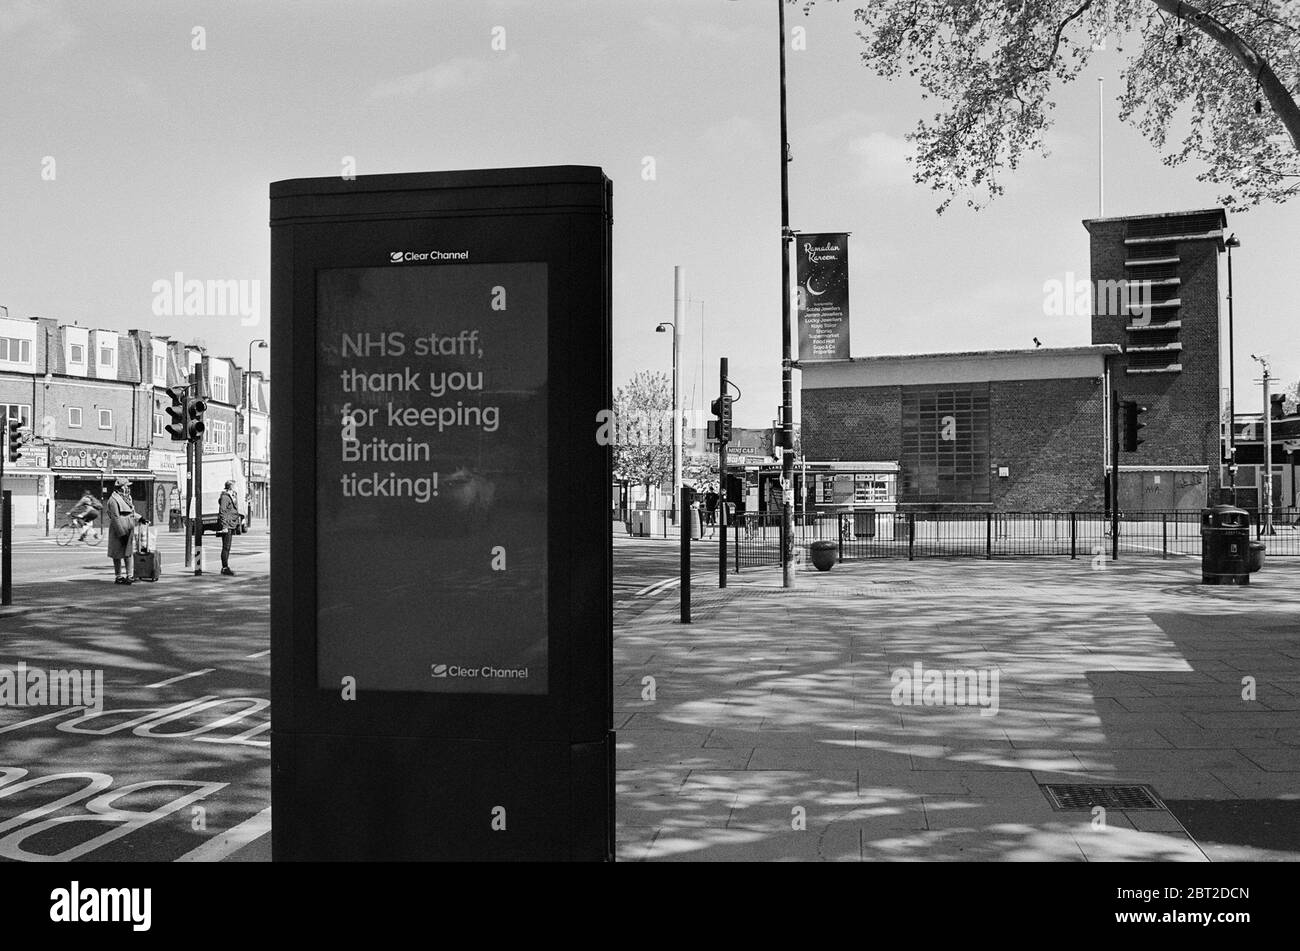 La publicidad electrónica despaga agradeciendo a la NHS, en Turnpike Lane, North London UK, durante la crisis del coronavirus en mayo de 2020 Foto de stock